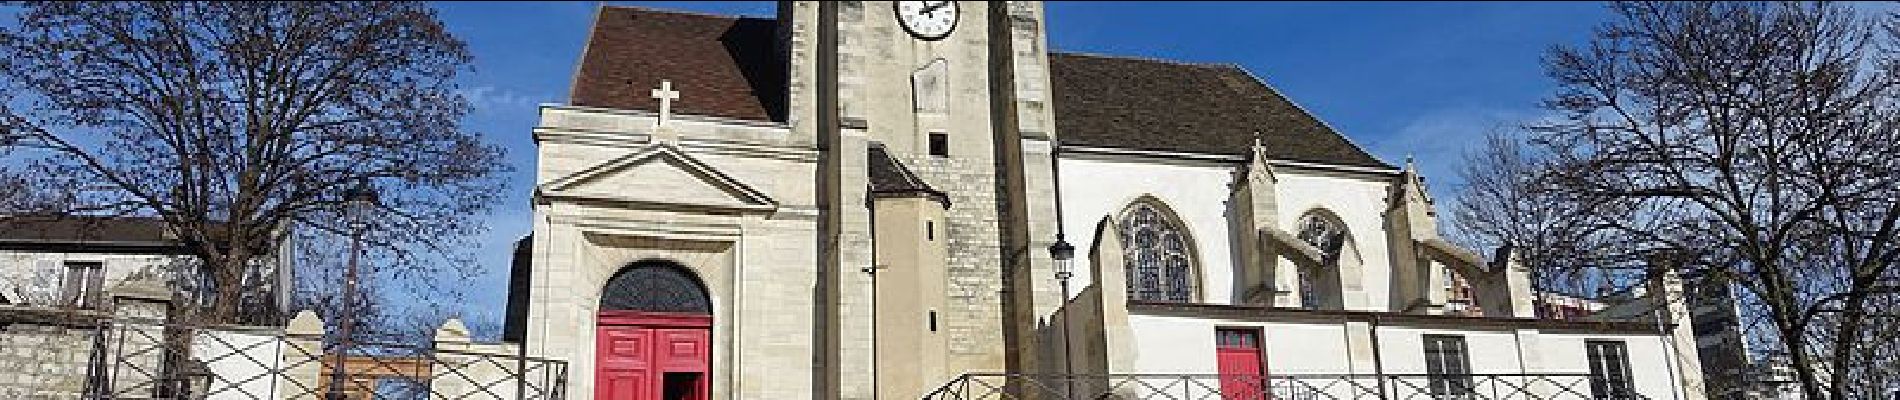 Point d'intérêt Paris - Église Saint-Germain de Charonne - Photo